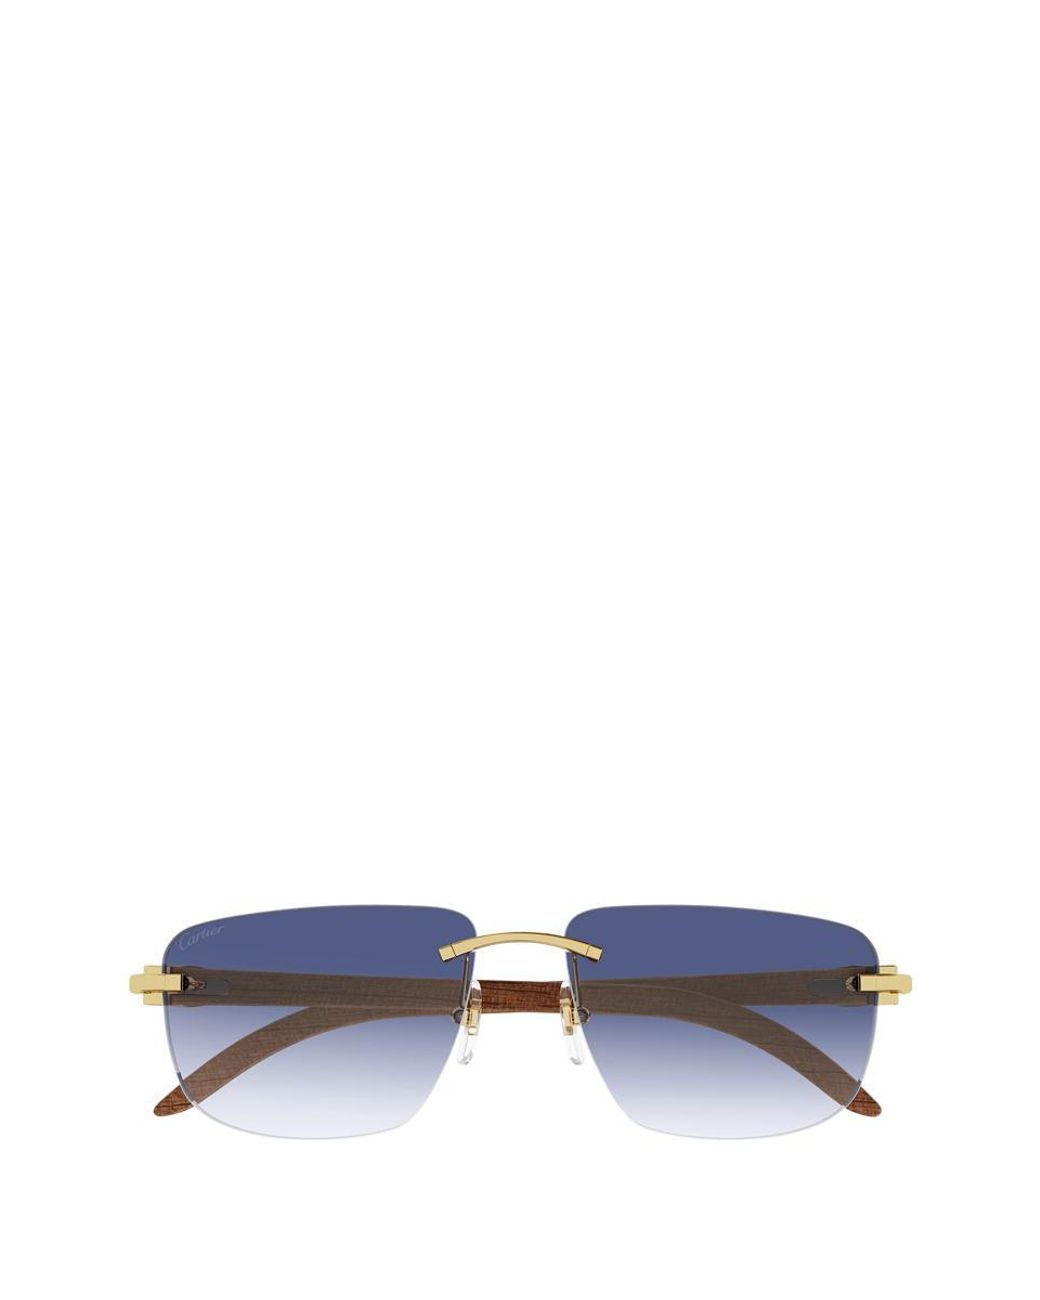 Signature C de Cartier sunglasses - Sunglasses | Cartier Thailand